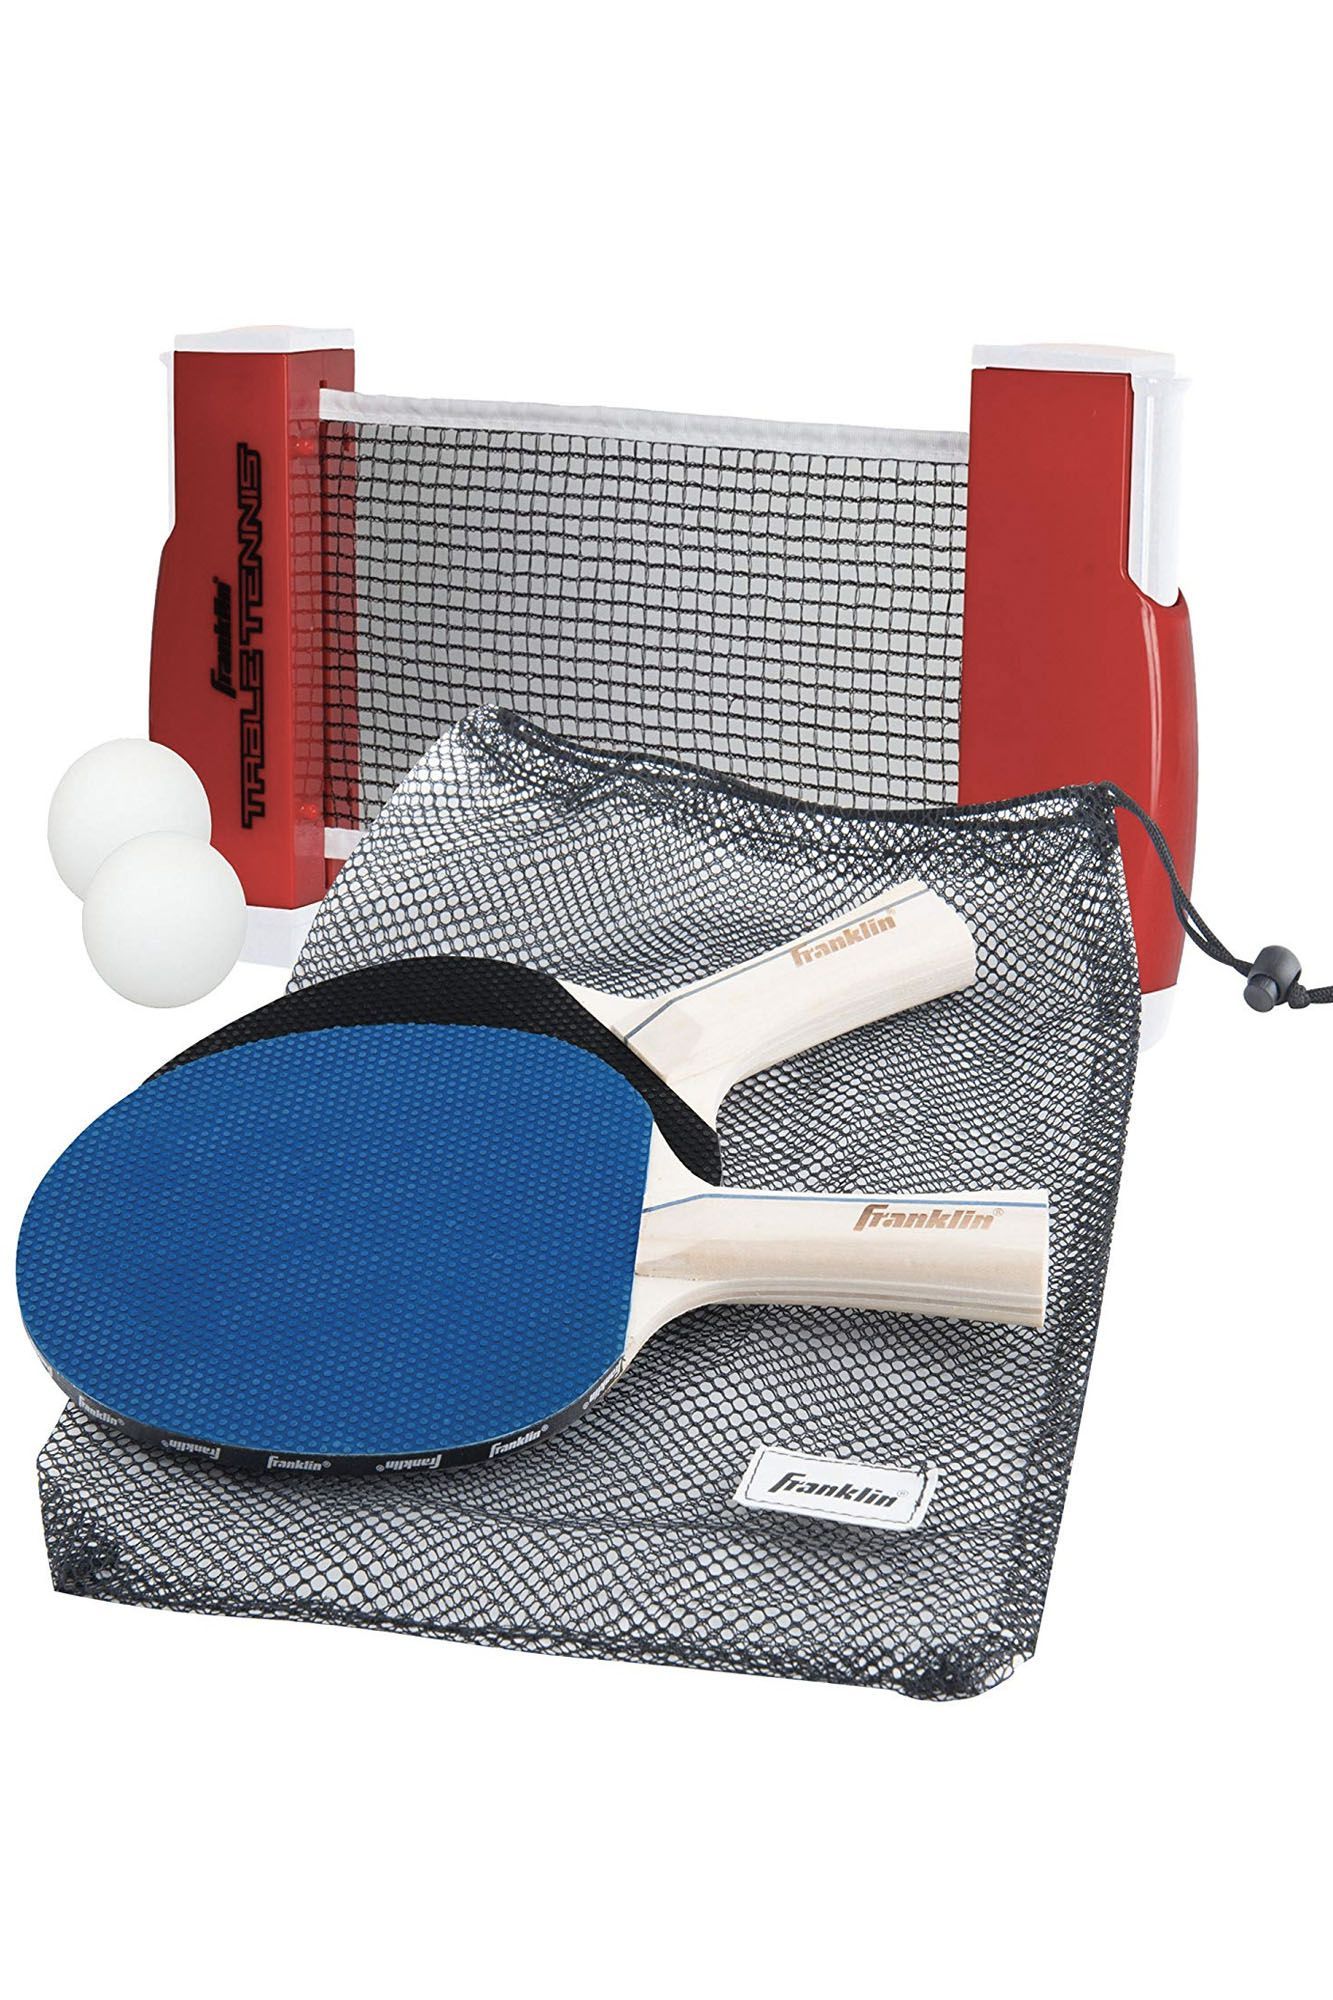 Набор ракеток для настольного тенниса. ARTENGO 700 ракетка для настольного тенниса. Набор д/настольного тенниса (ракетка 2шт,шар 3шт). Набор для настольный теннис Ping - Pong. Ракетка настольного тенниса start Level 200.